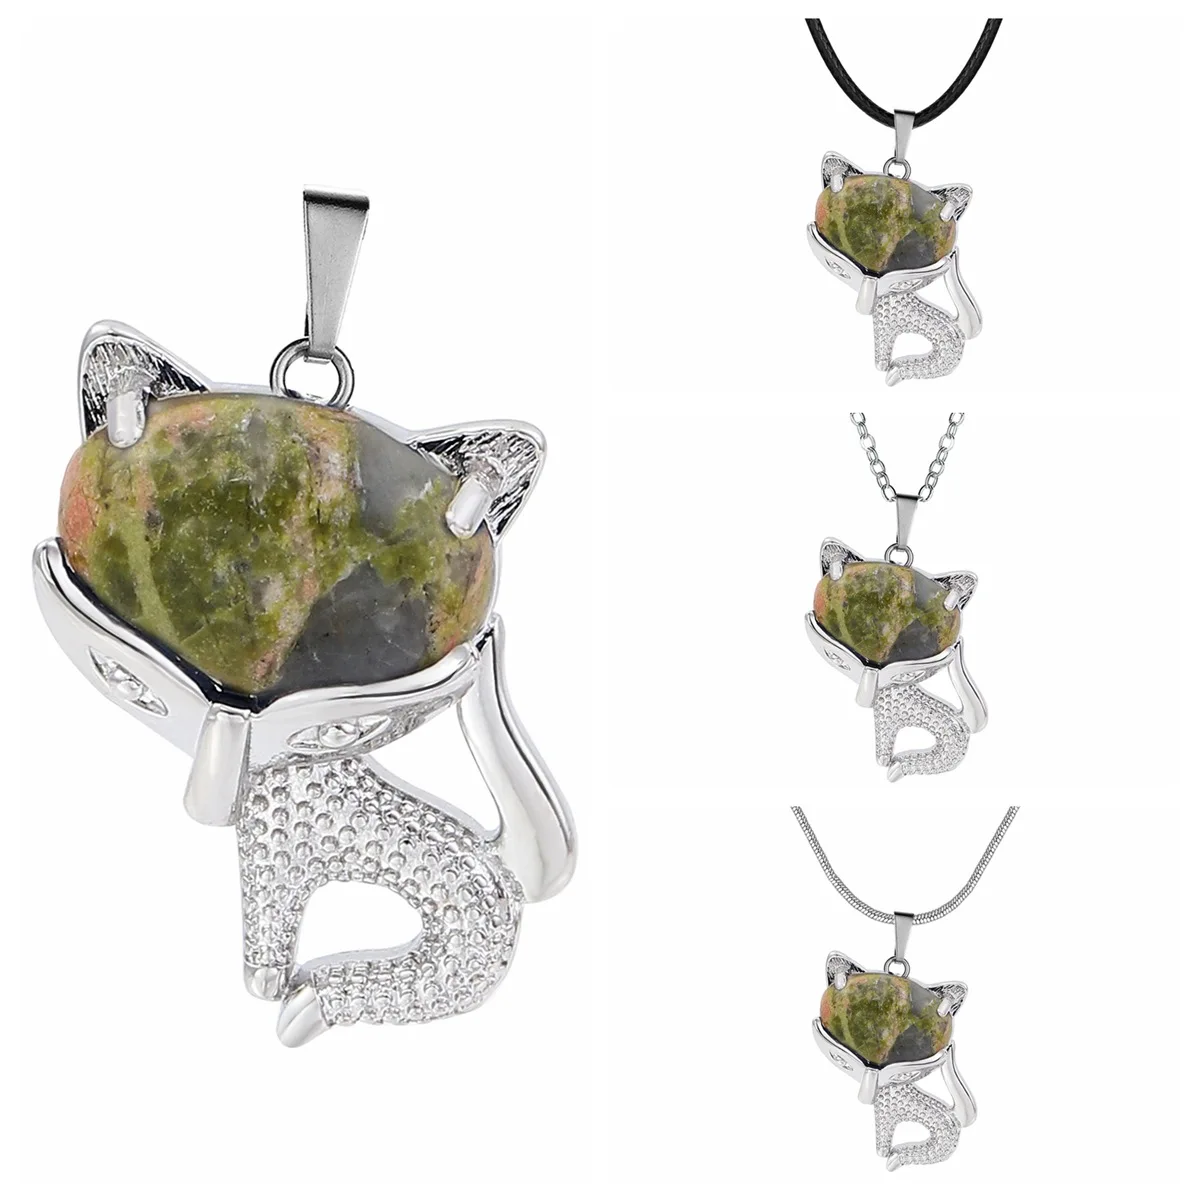 

Женское Ожерелье с кристаллами Unakite, ожерелье из натурального драгоценного камня, подвеска в виде серебряной лисы, лечебный амулет чакры, чокер в виде животного, ювелирные изделия